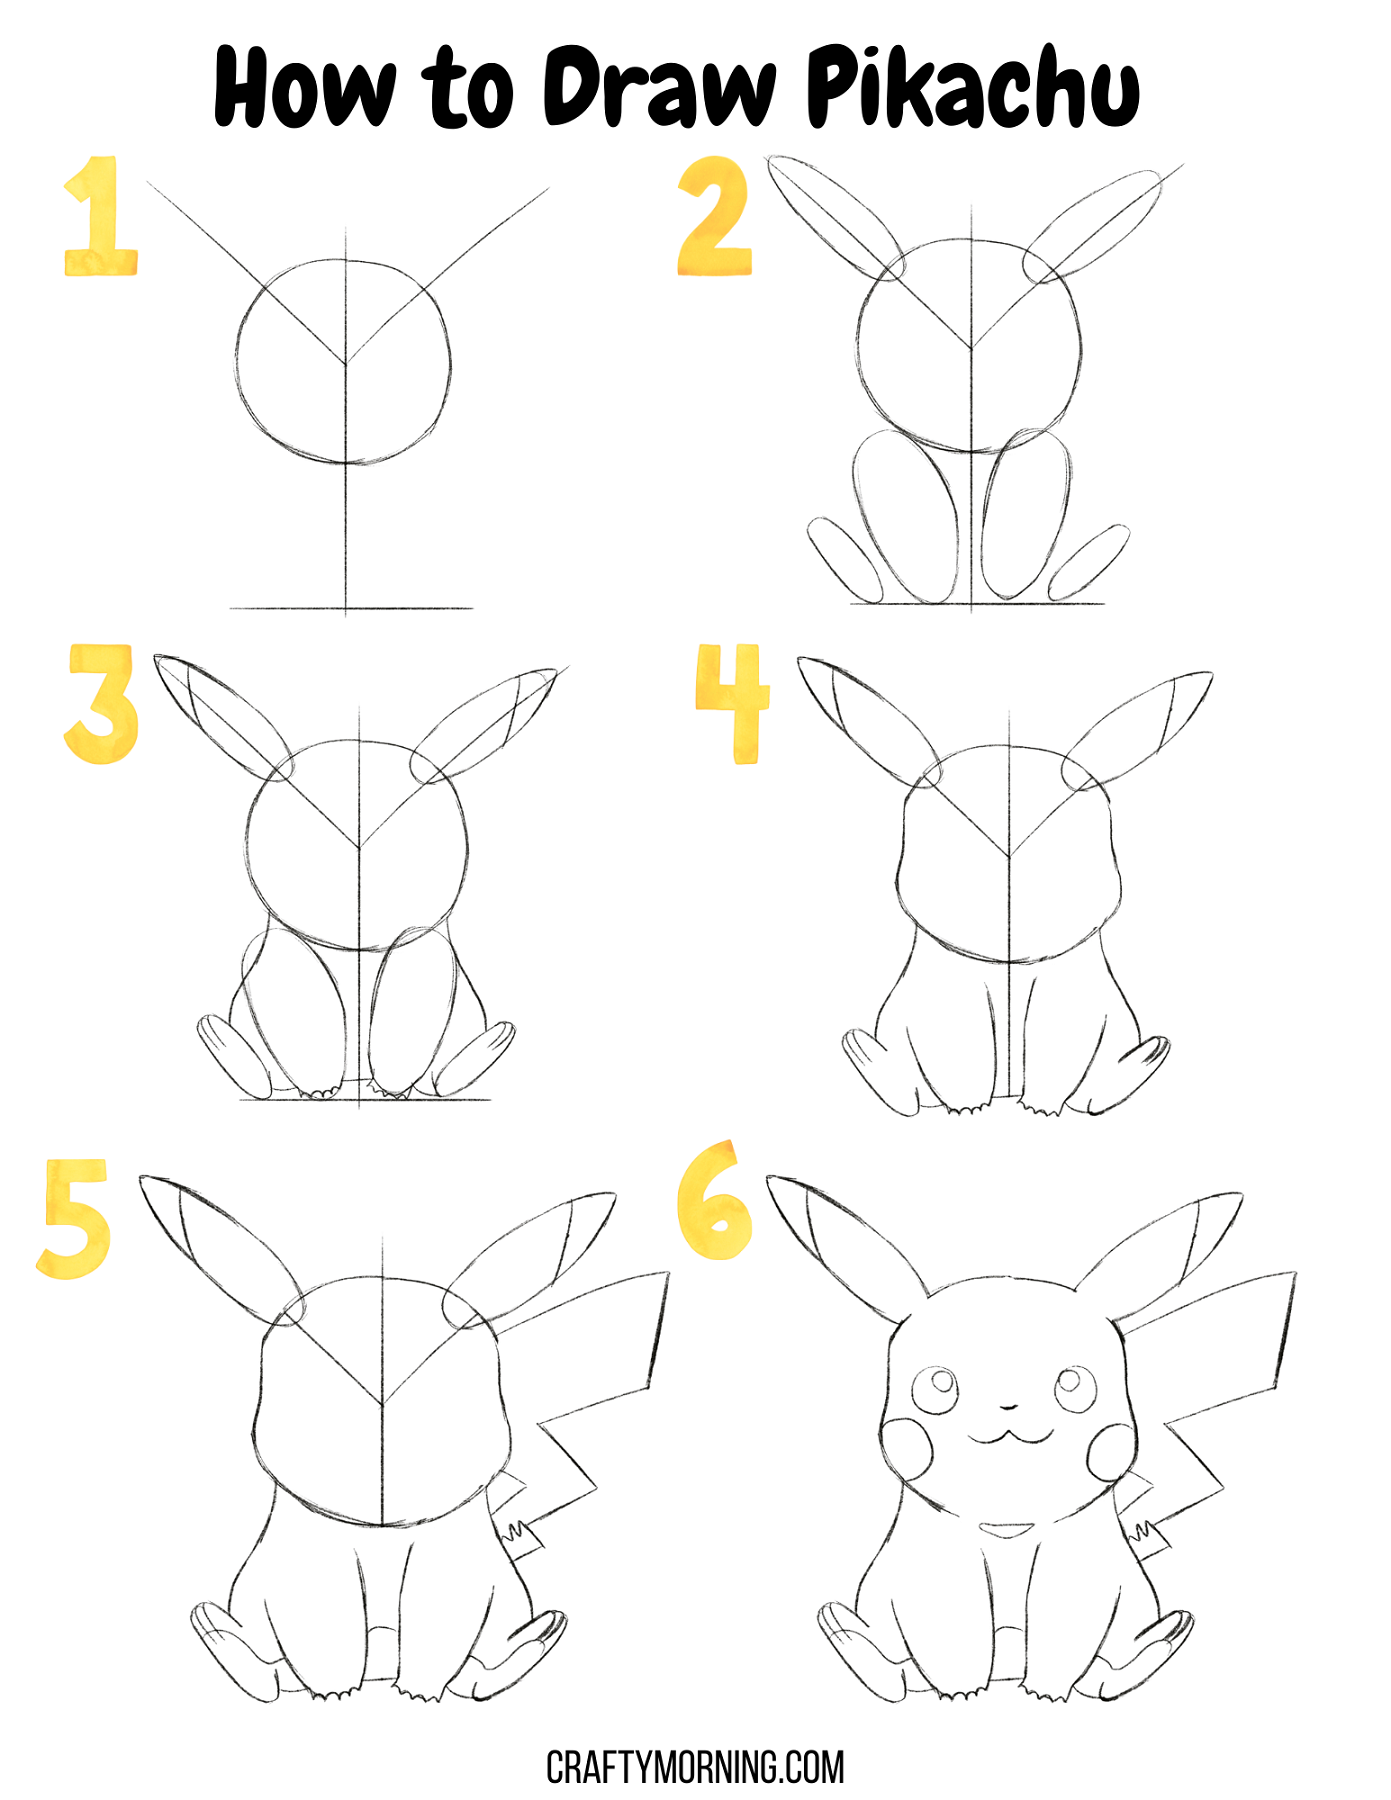 How To Draw Pikachu || How To Draw Pikachu Pokemon - video Dailymotion